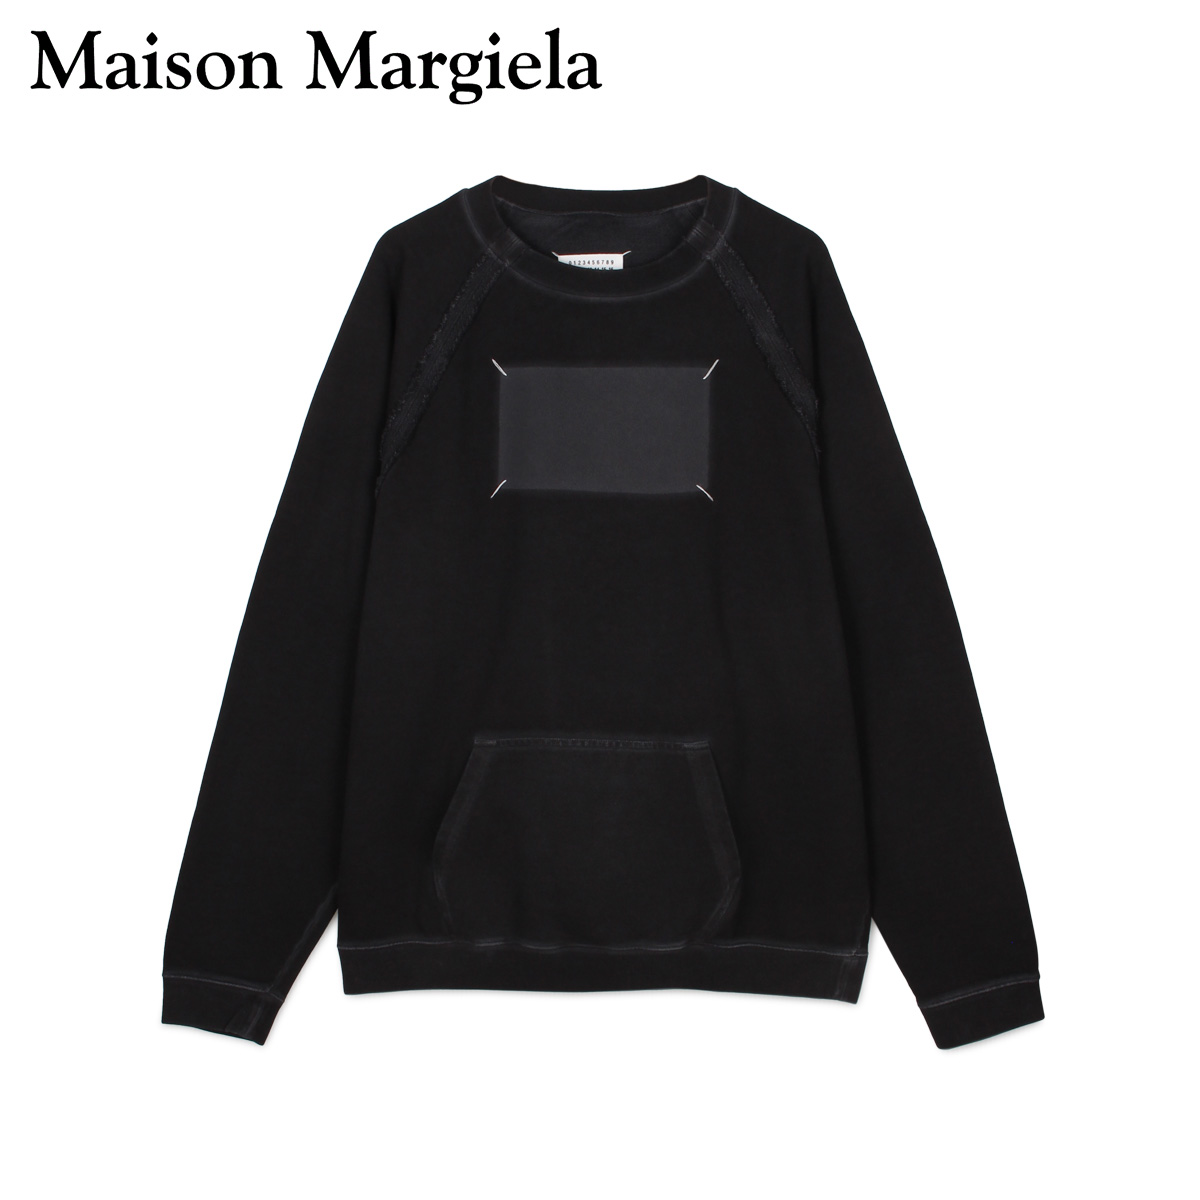 MAISON MARGIELA メゾンマルジェラ トレーナー スウェット プルオーバー クルーネック メンズ SWEAT ブラック 黒  S50GU0138-900 | シュガーオンラインショップ